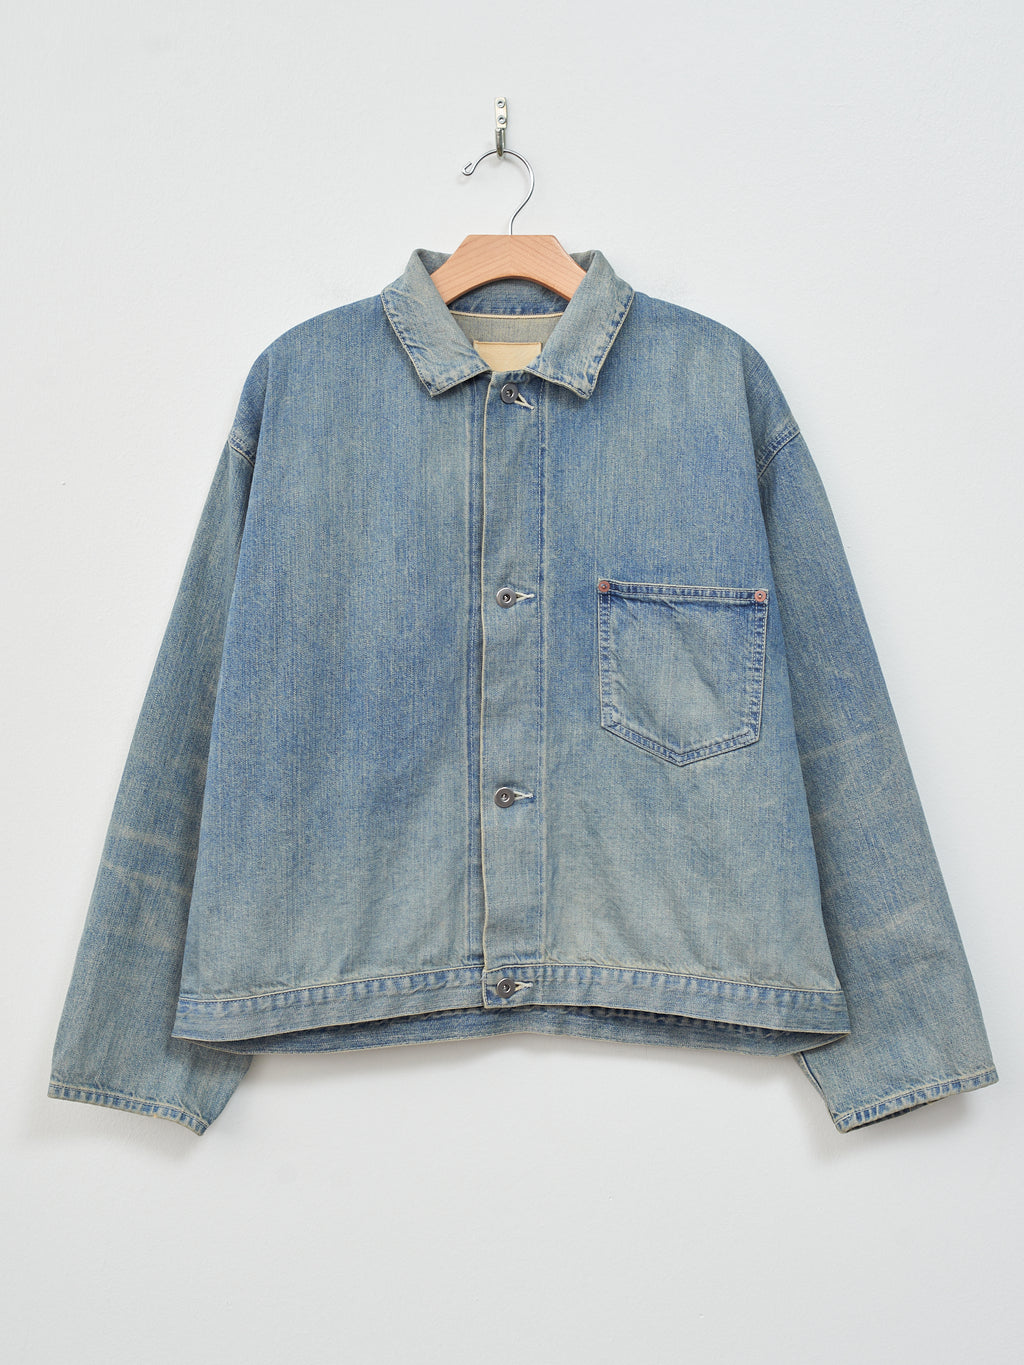 Namu Shop - Yoko Sakamoto Denim Blouse Jacket - Fade Indigo